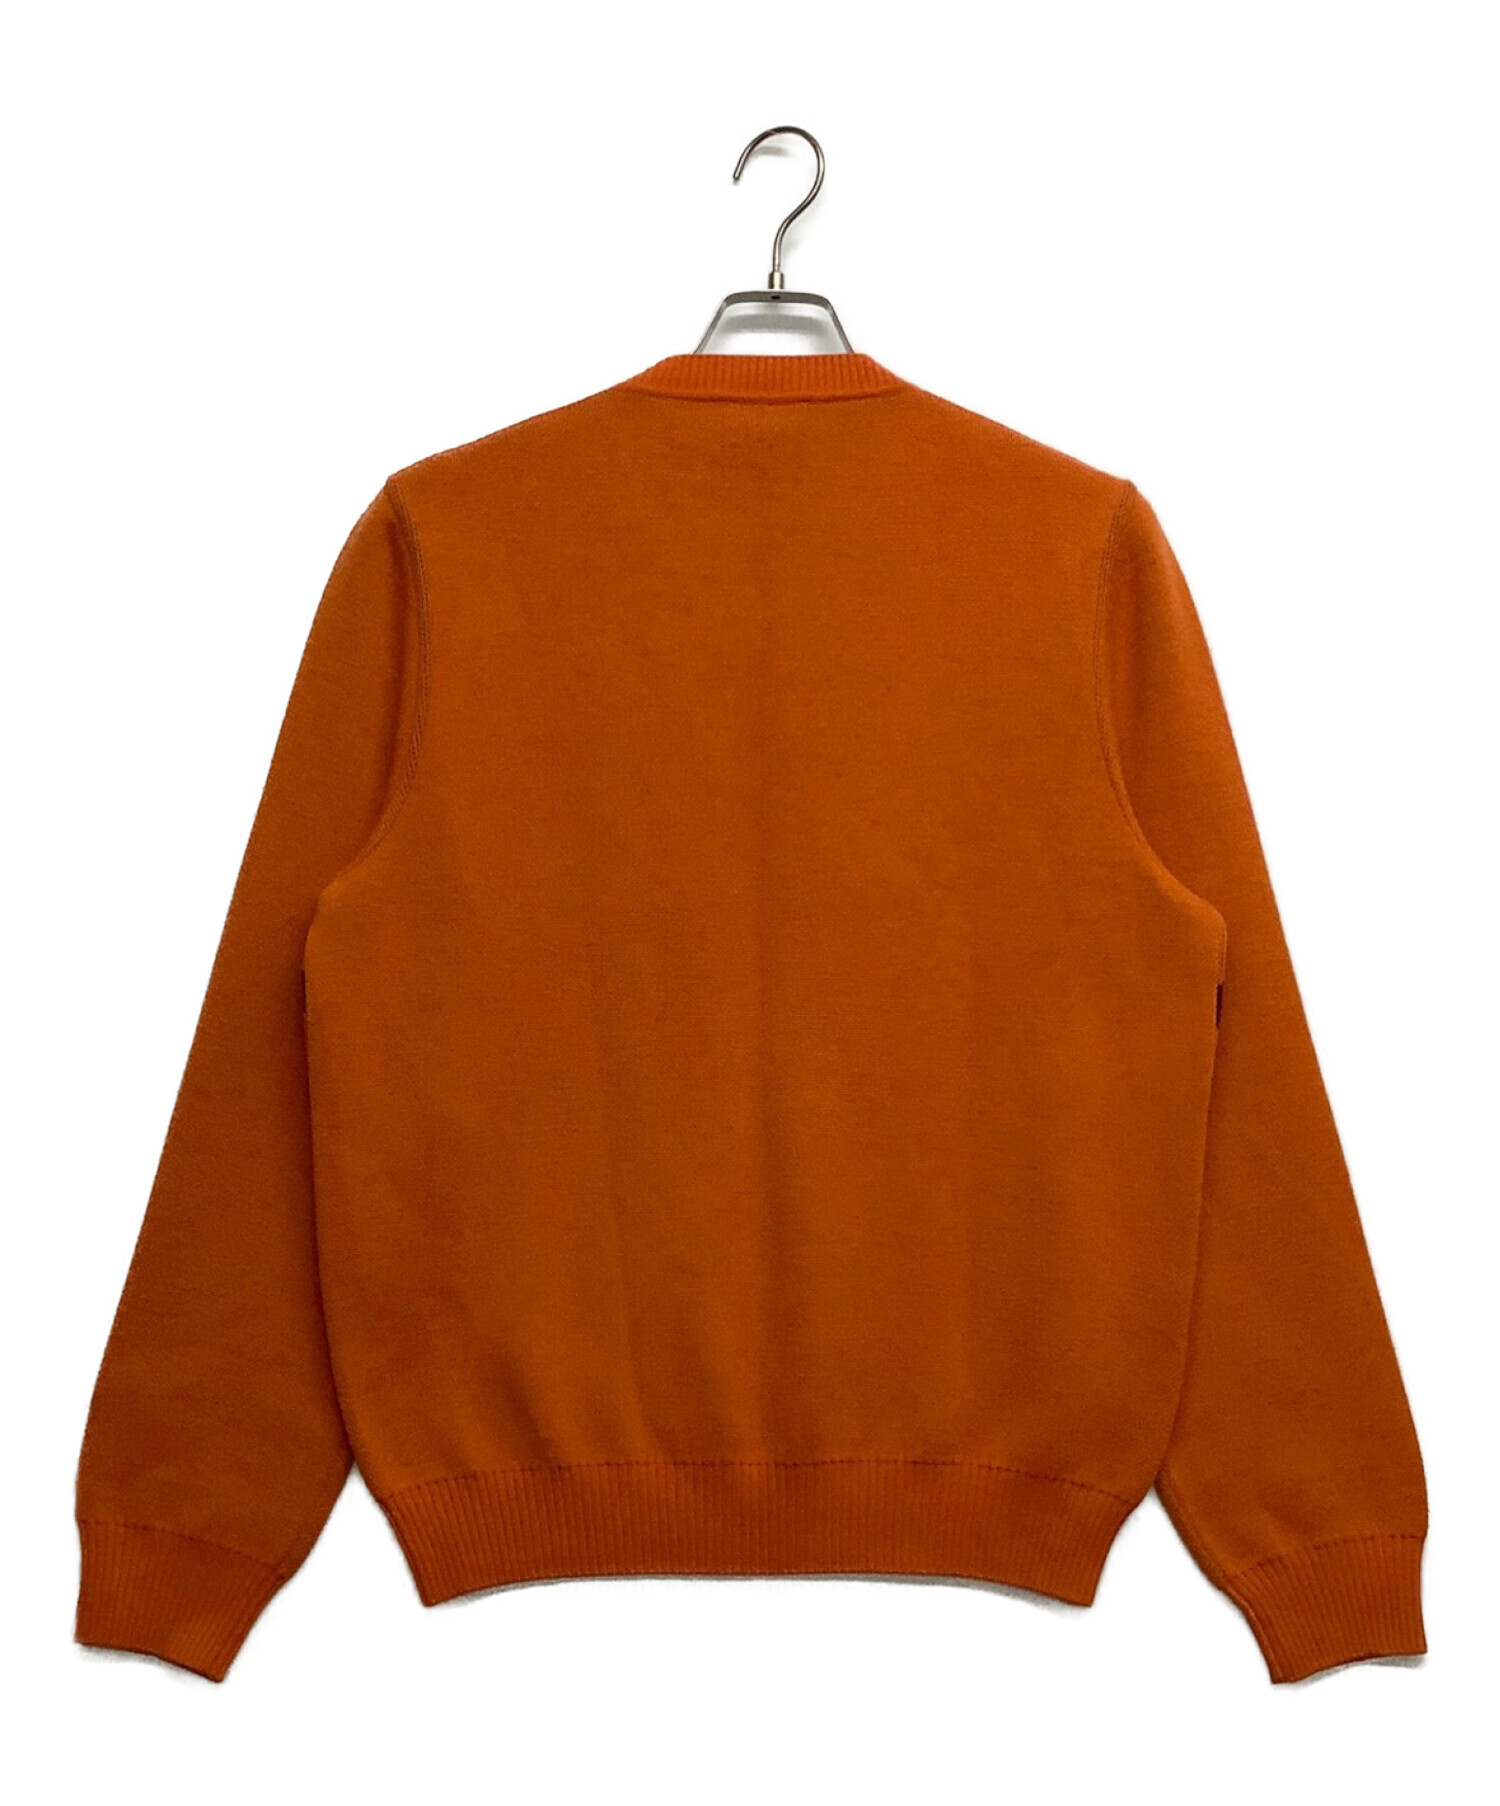 HERMES (エルメス) セーター オレンジ サイズ:M